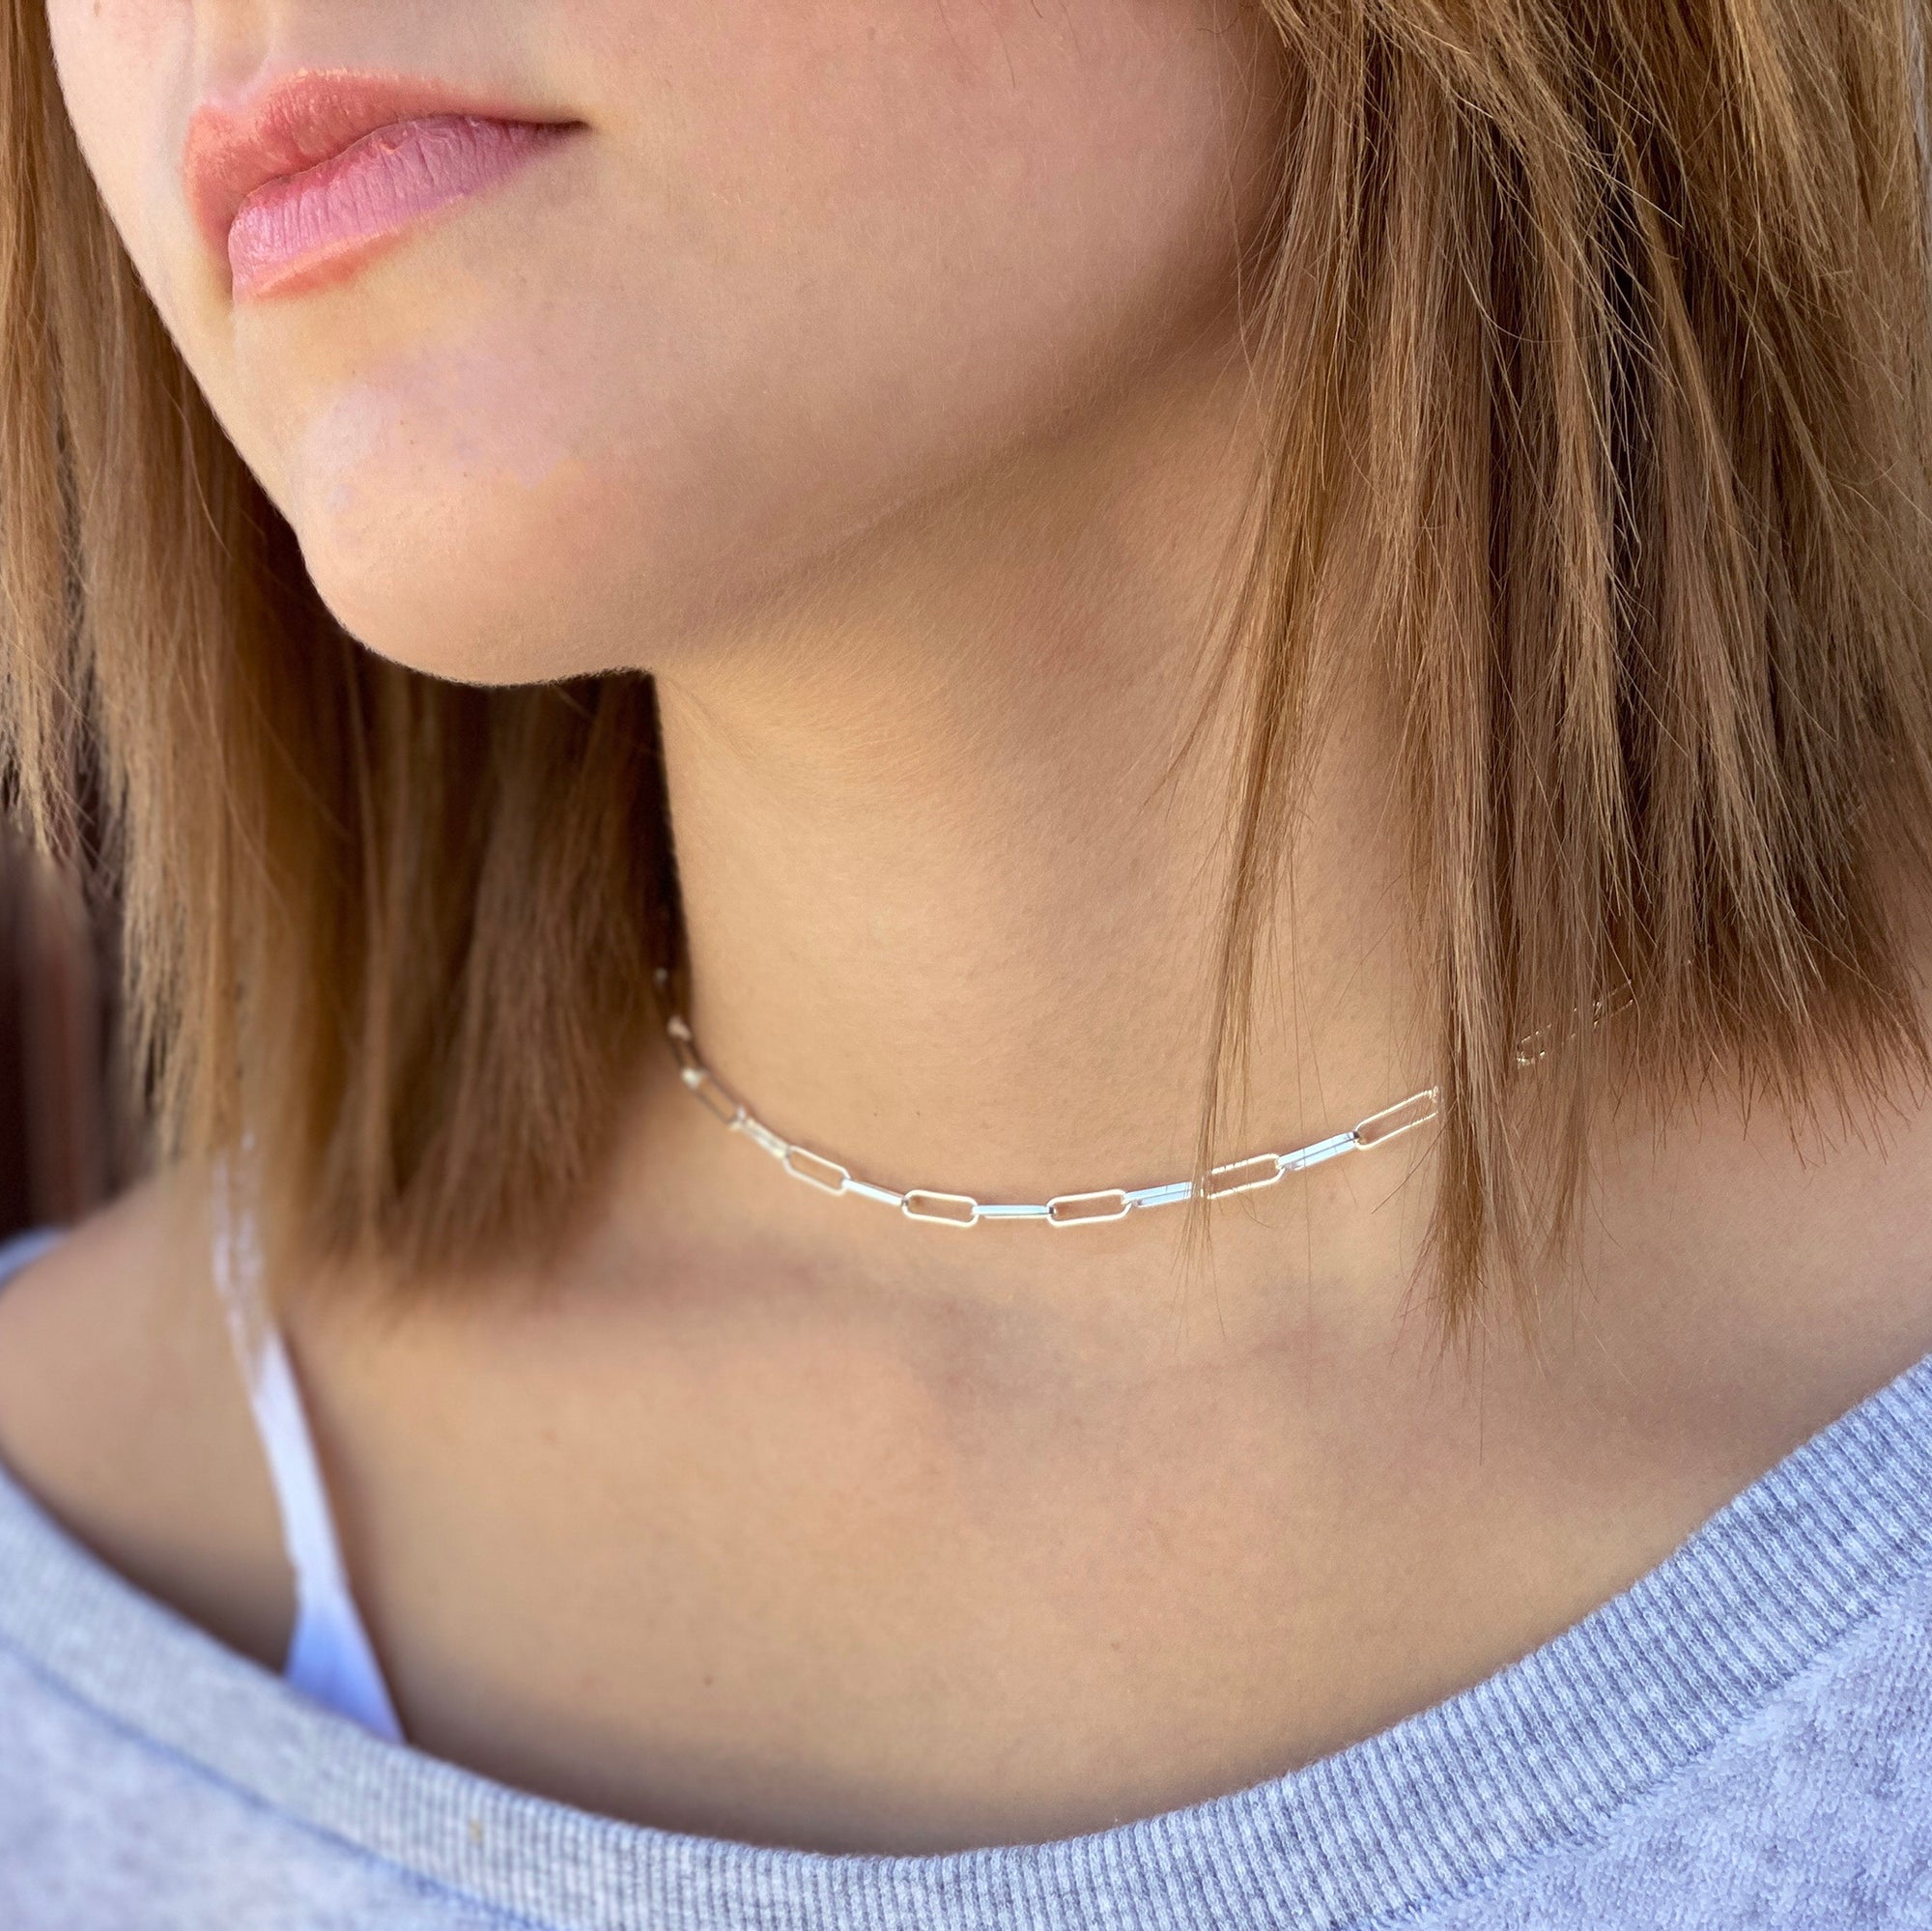 women wearing sterling silver choker necklace